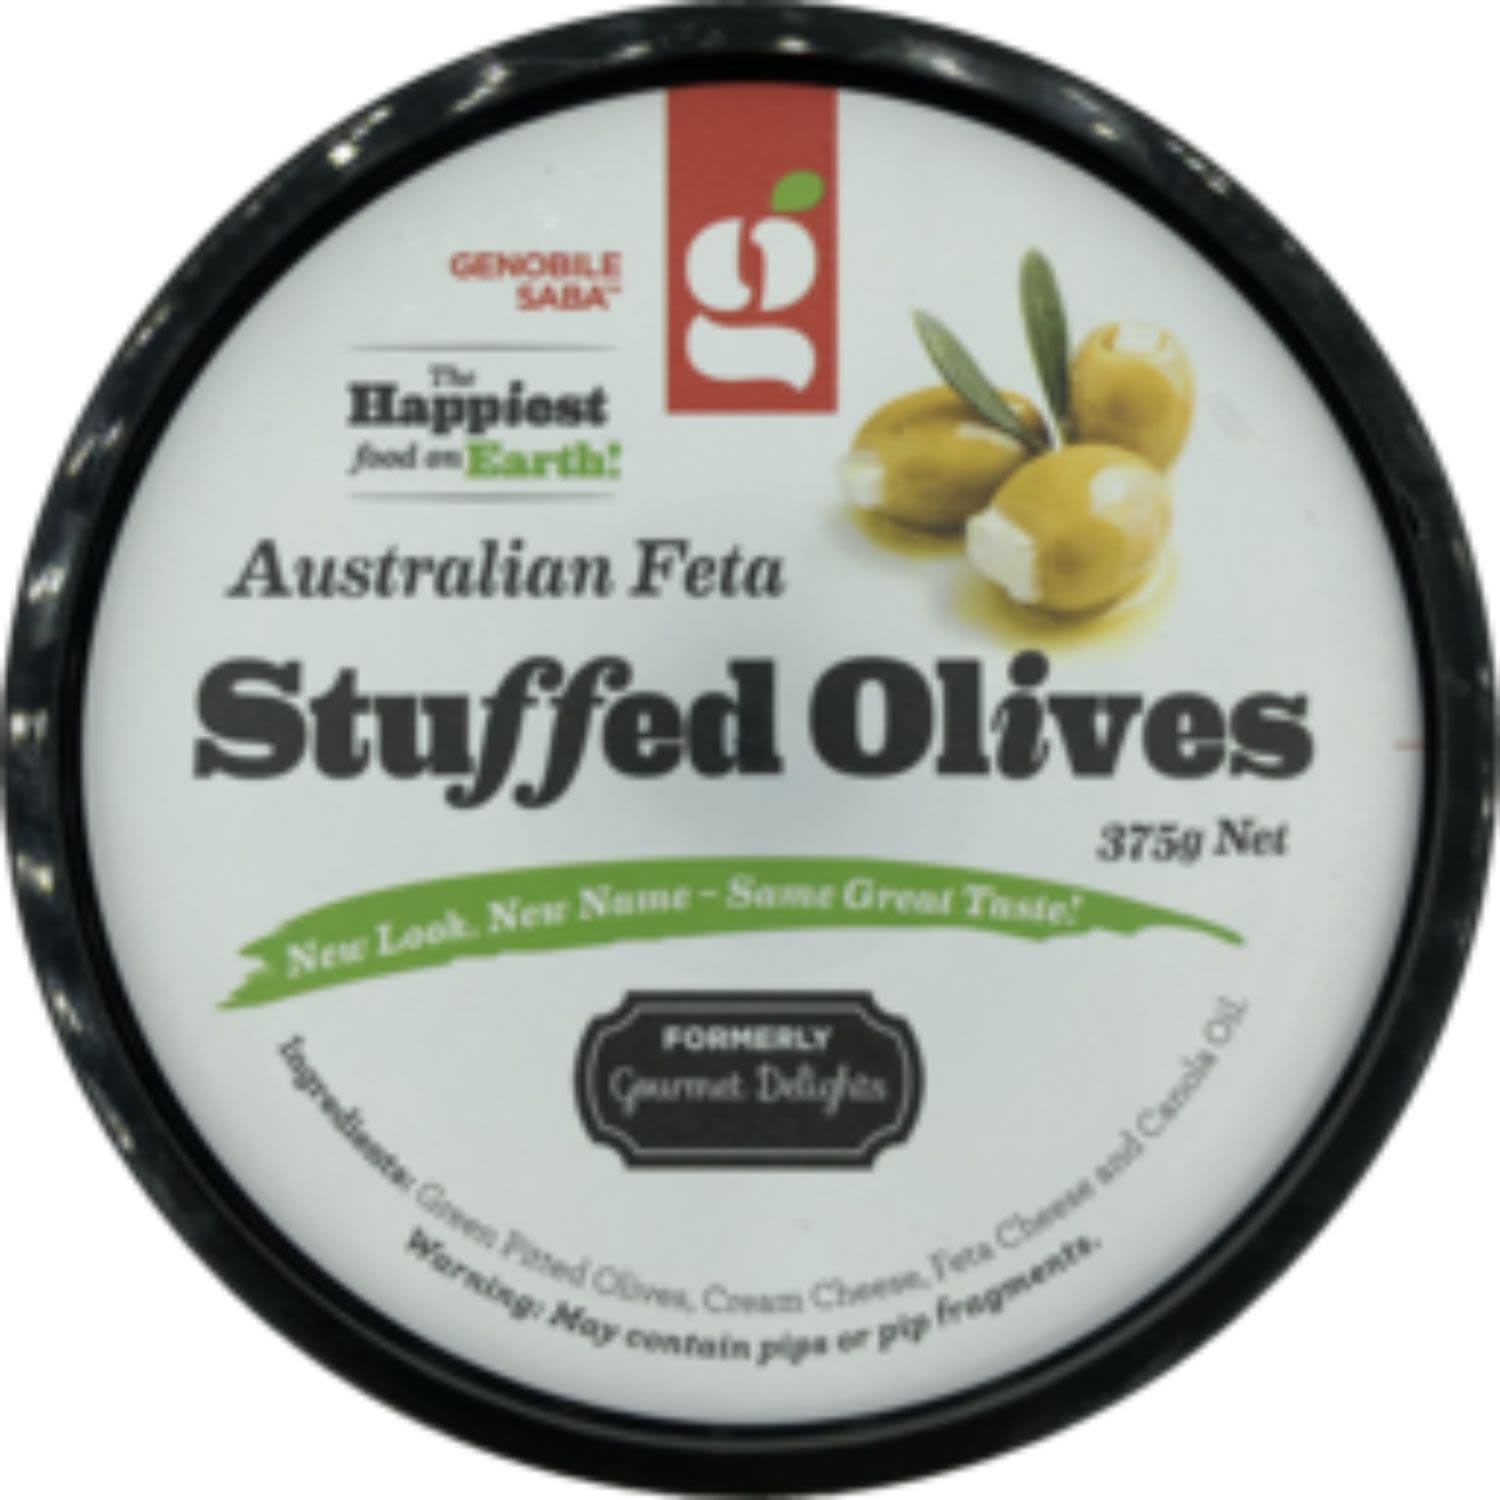 Genobile Saba Australian Feta Stuffed Olives, 375 Gram